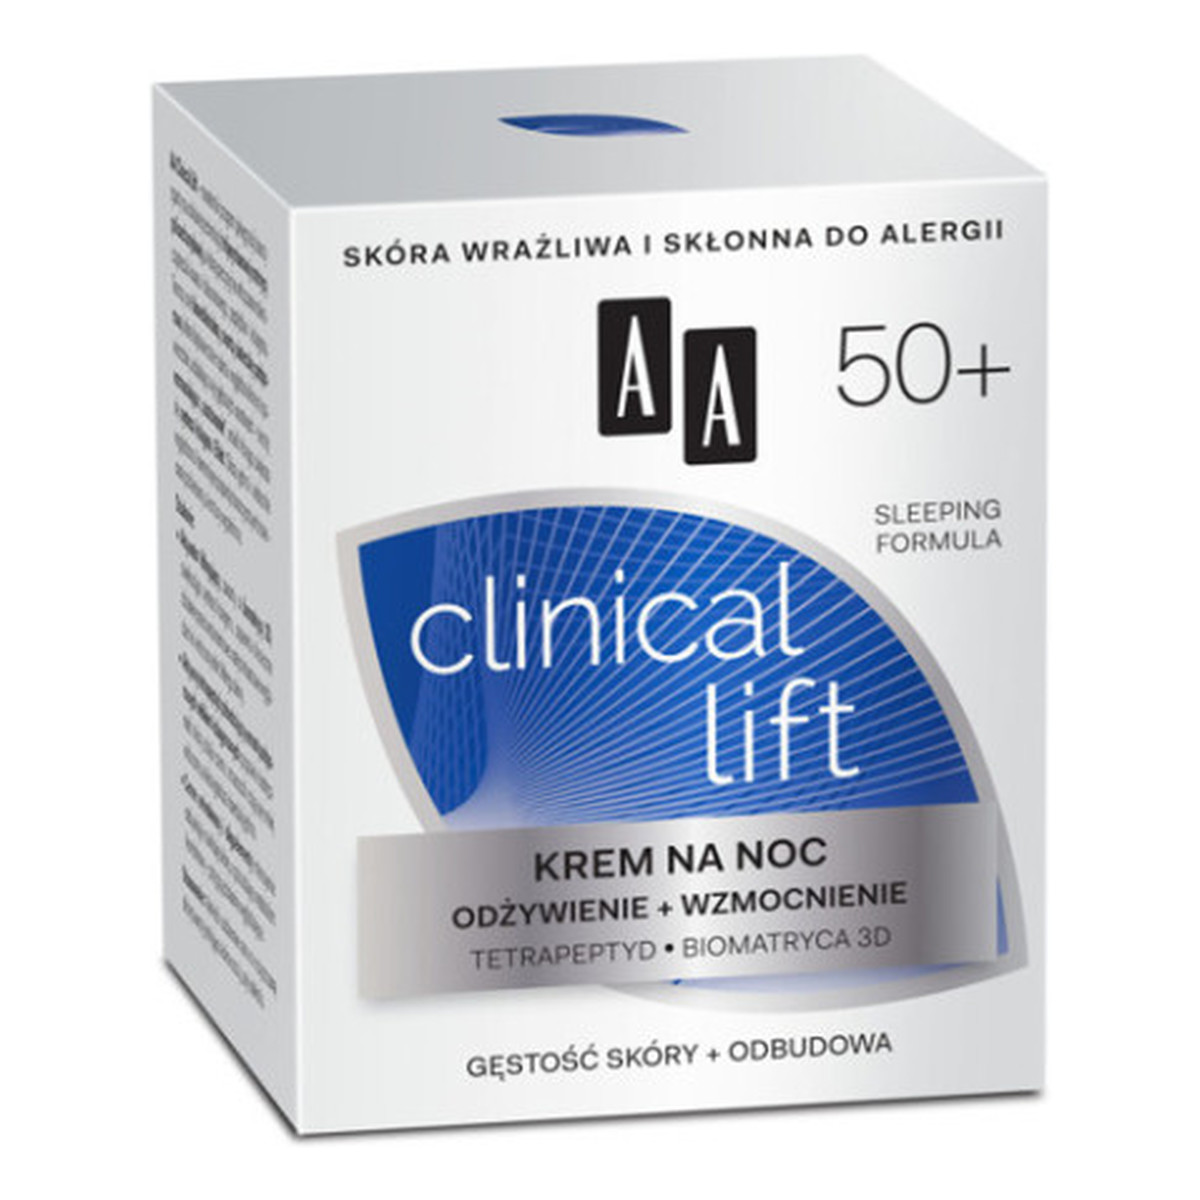 AA 50+ Clinical Lift Krem Do Twarzy Na Noc Odżywienie i Wzmocnienie 50ml